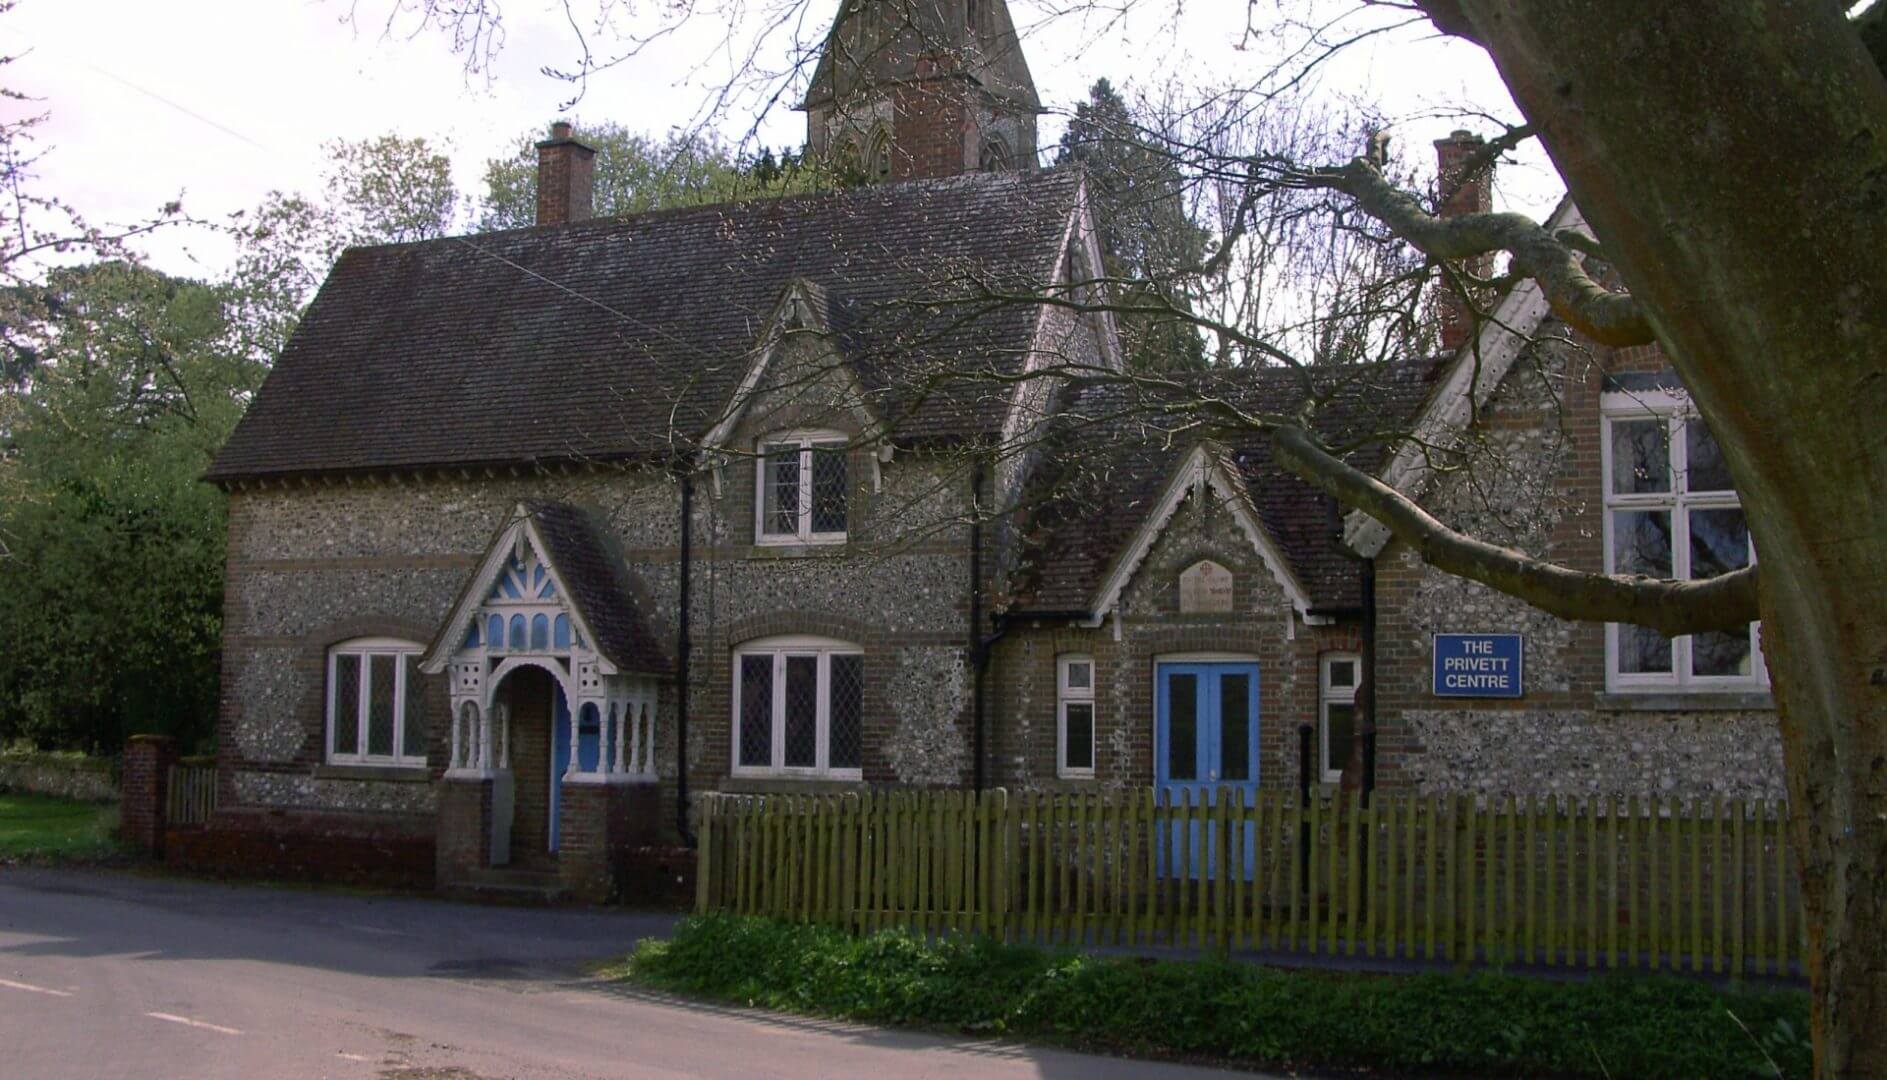 The Privett Centre hampshire